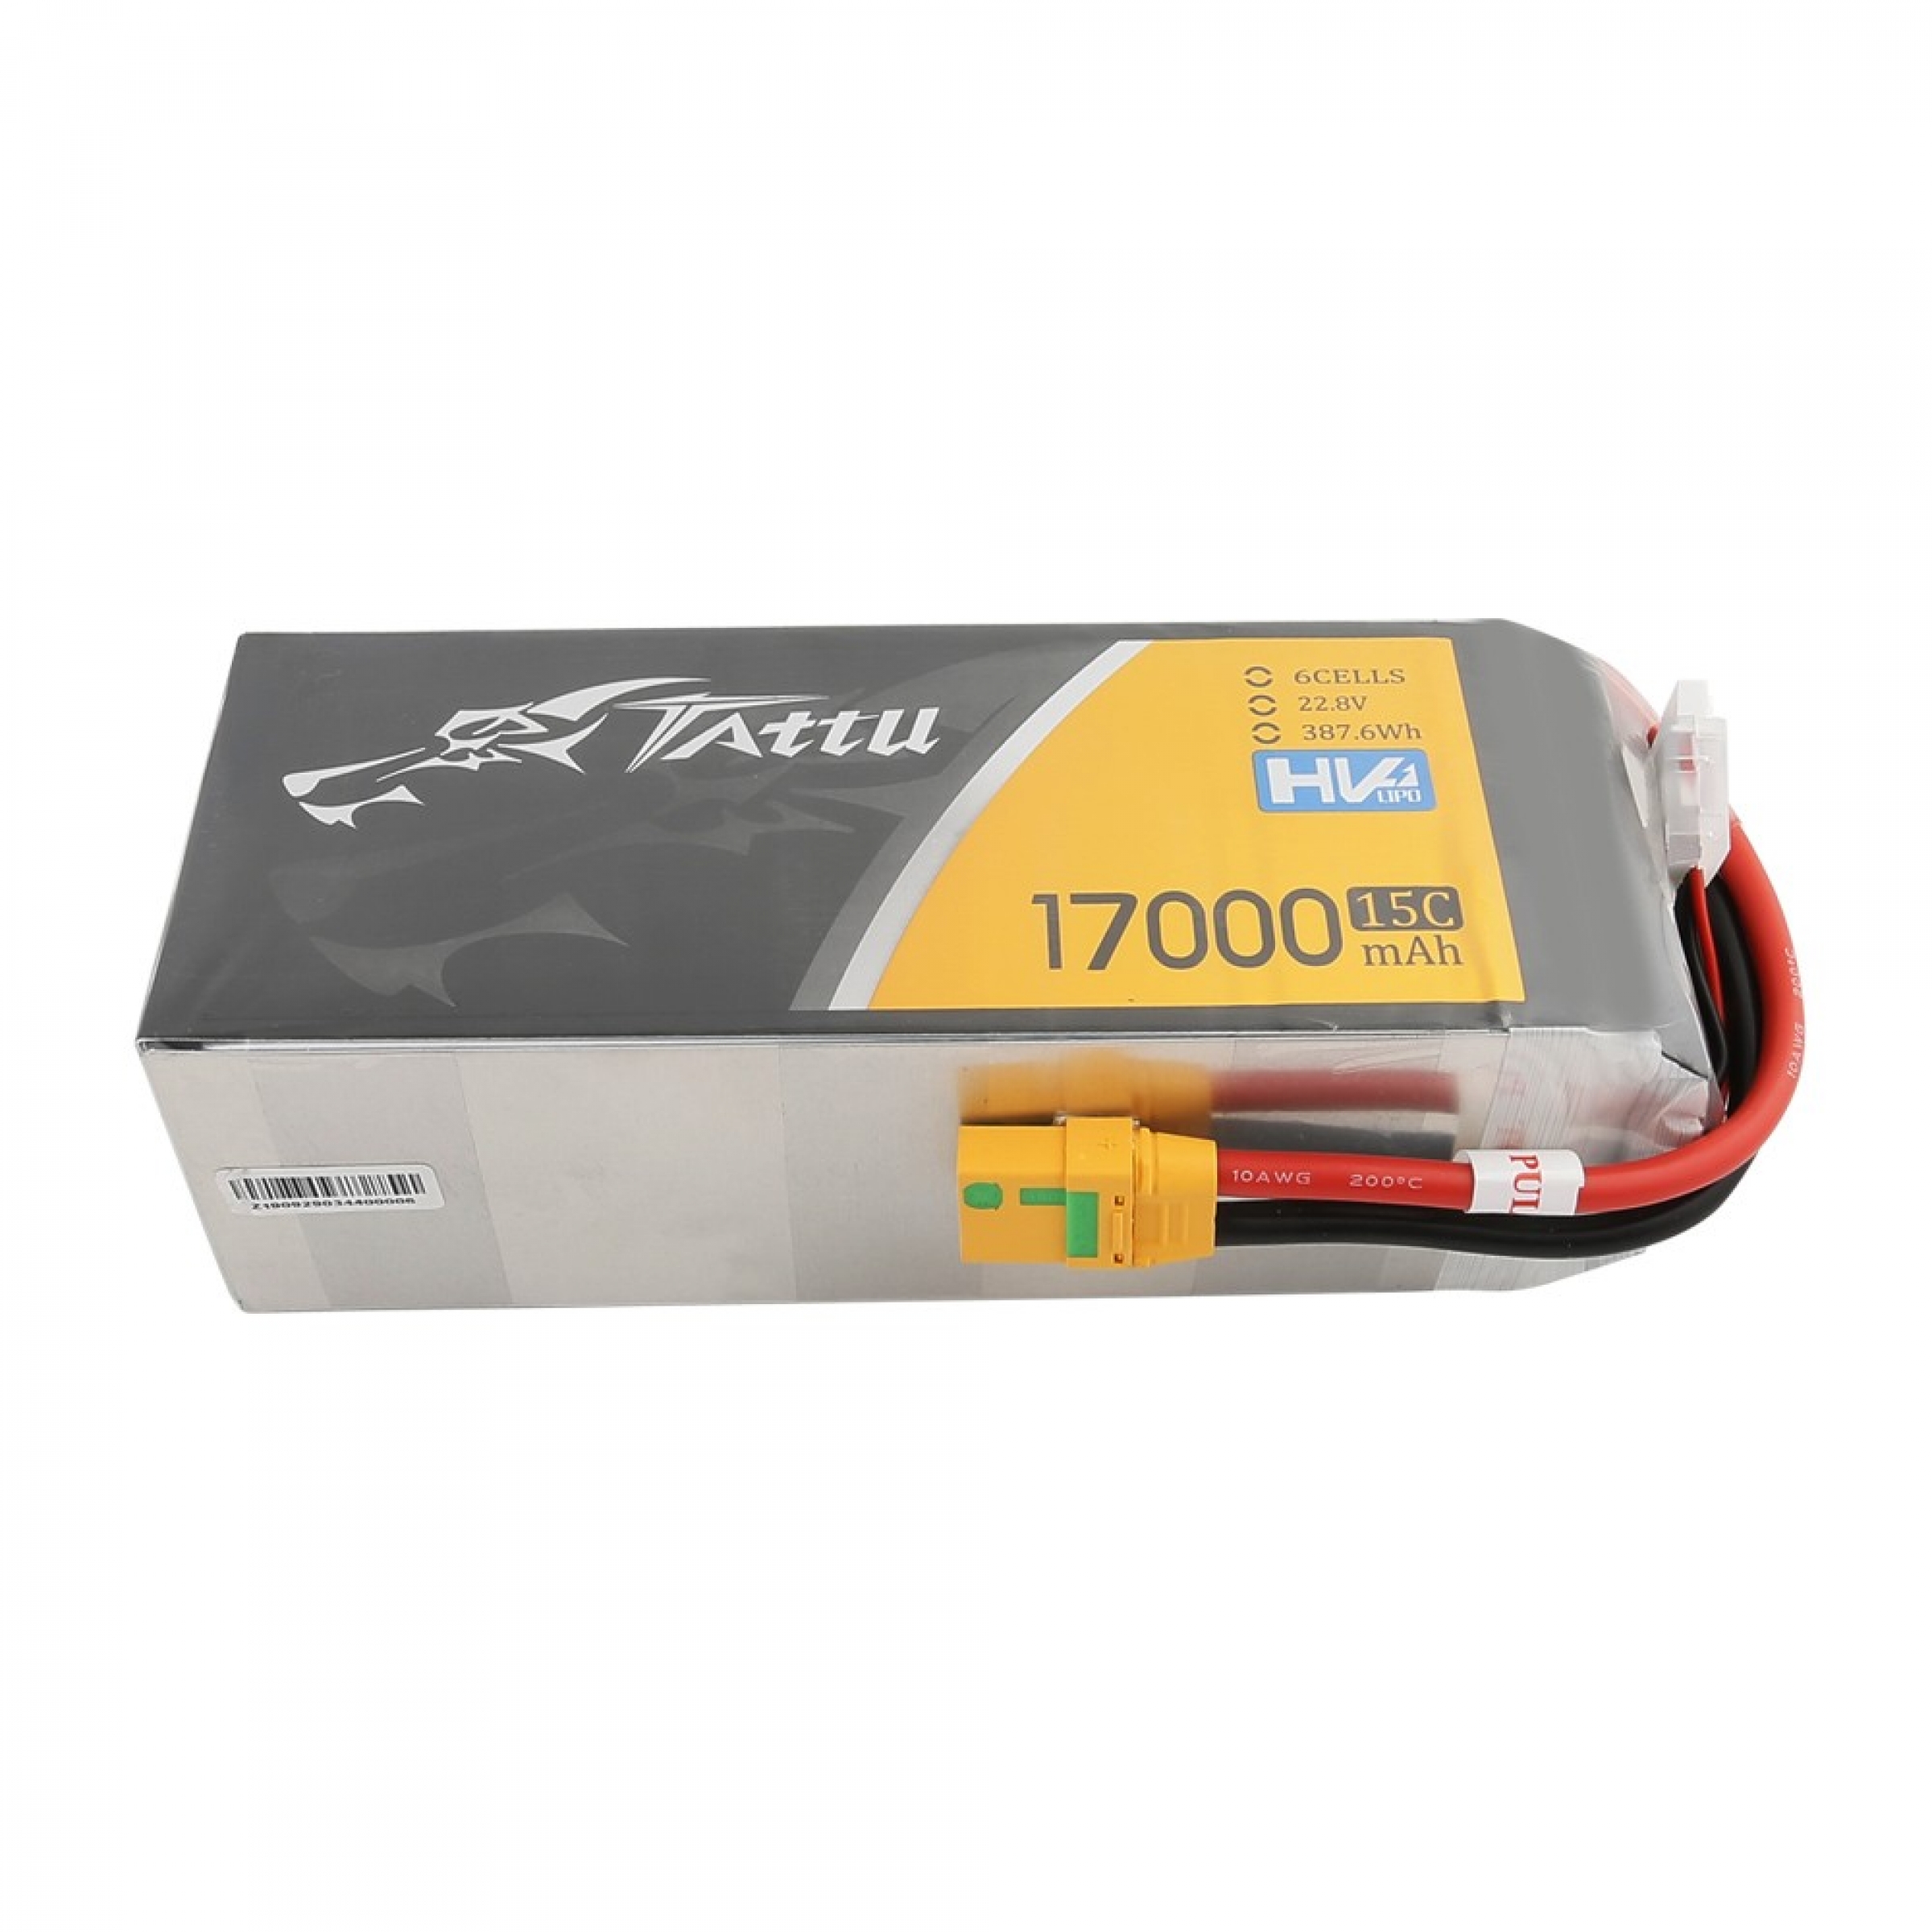 Tattu 17000mAh 22,8V 15C 6S1P Lipobatterie mit XT90-S (Funkenschutz) Stecker